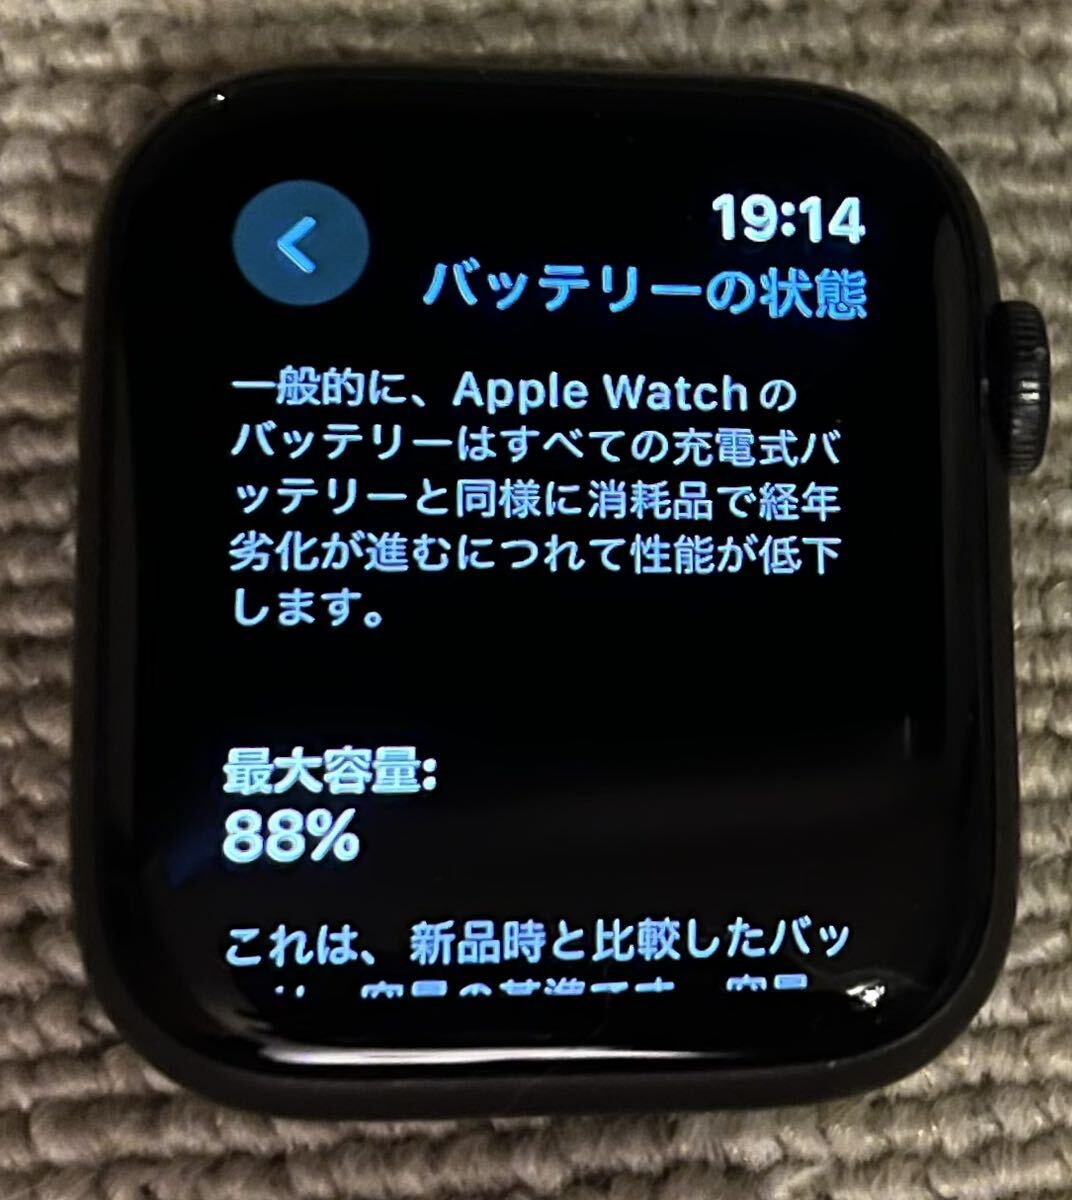  превосходный товар Apple Watch Series 5 44mm Nike cell la-GPS работа хороший товар Apple магазин сообщение ограничение нет безопасность 